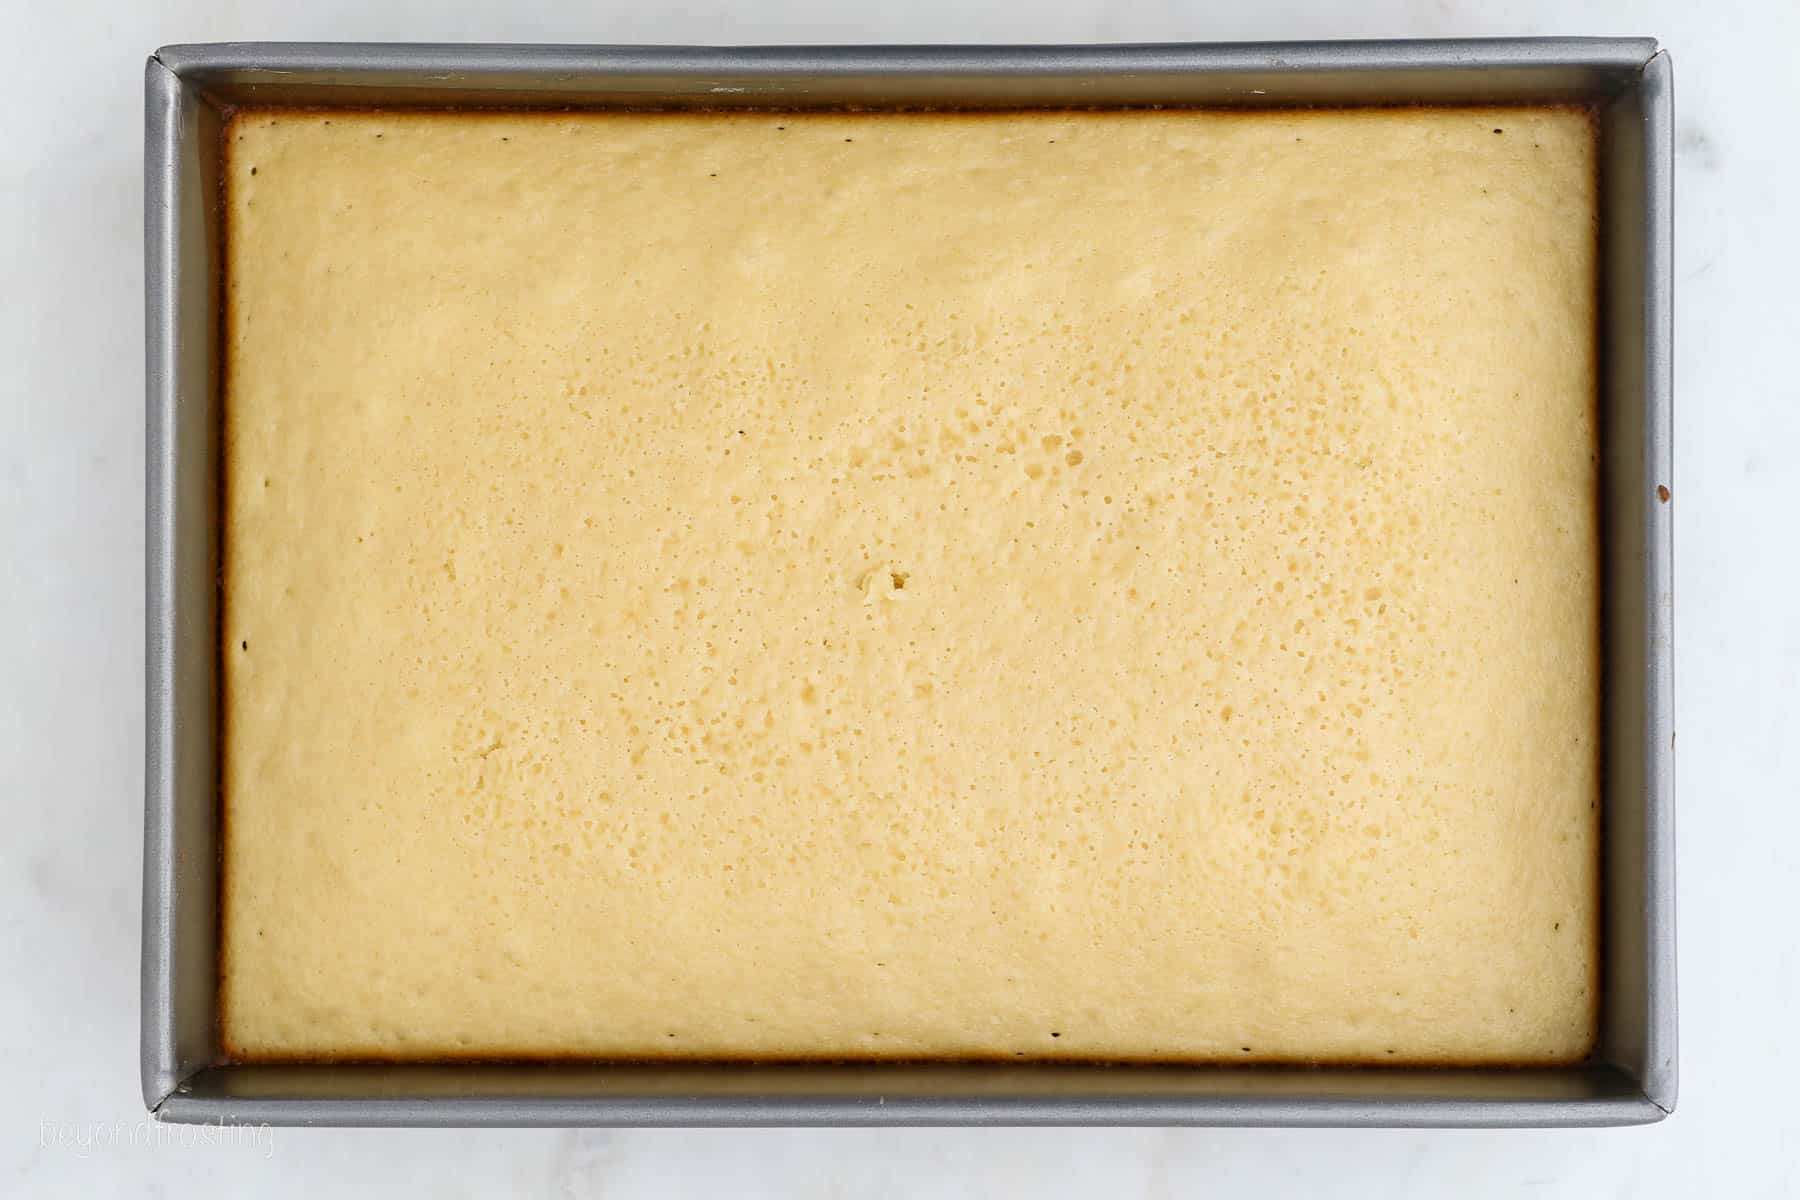 Baked vanilla cake inside a metal baking pan.